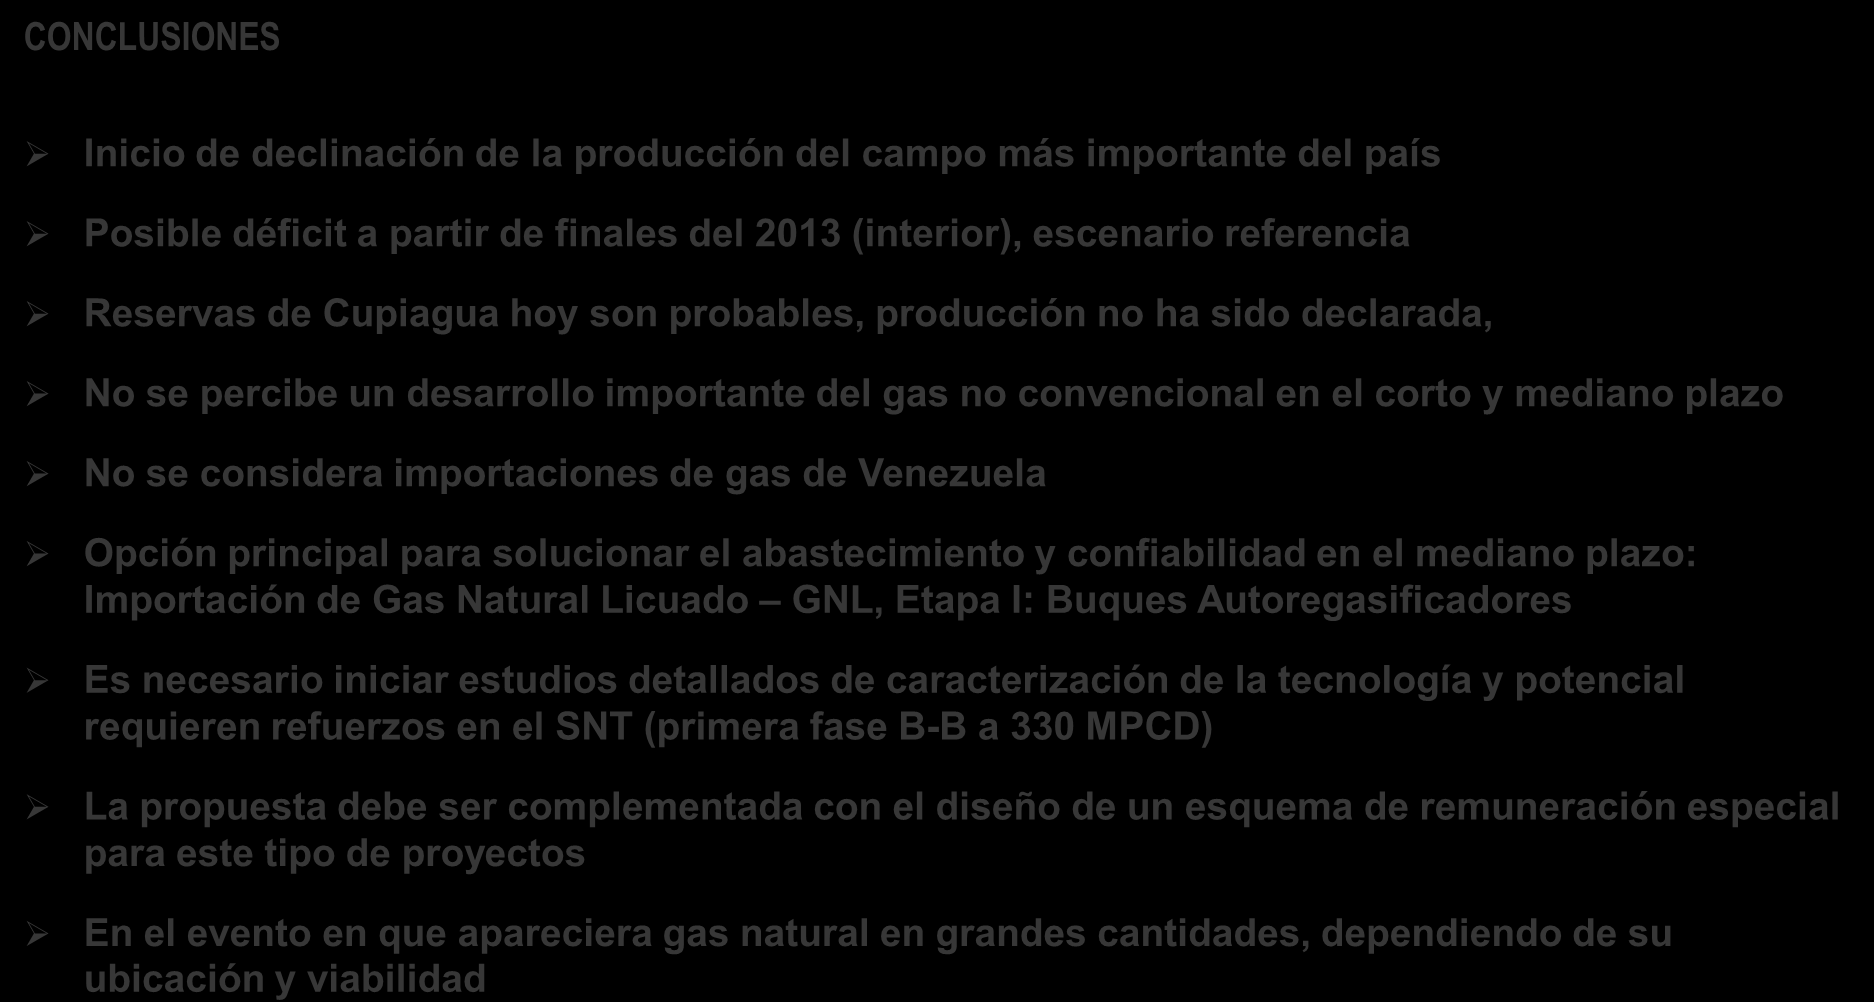 se considera importaciones de gas de Venezuela Opción principal para solucionar el abastecimiento y confiabilidad en el mediano plazo: Importación de Gas Natural Licuado GNL, Etapa I: Buques